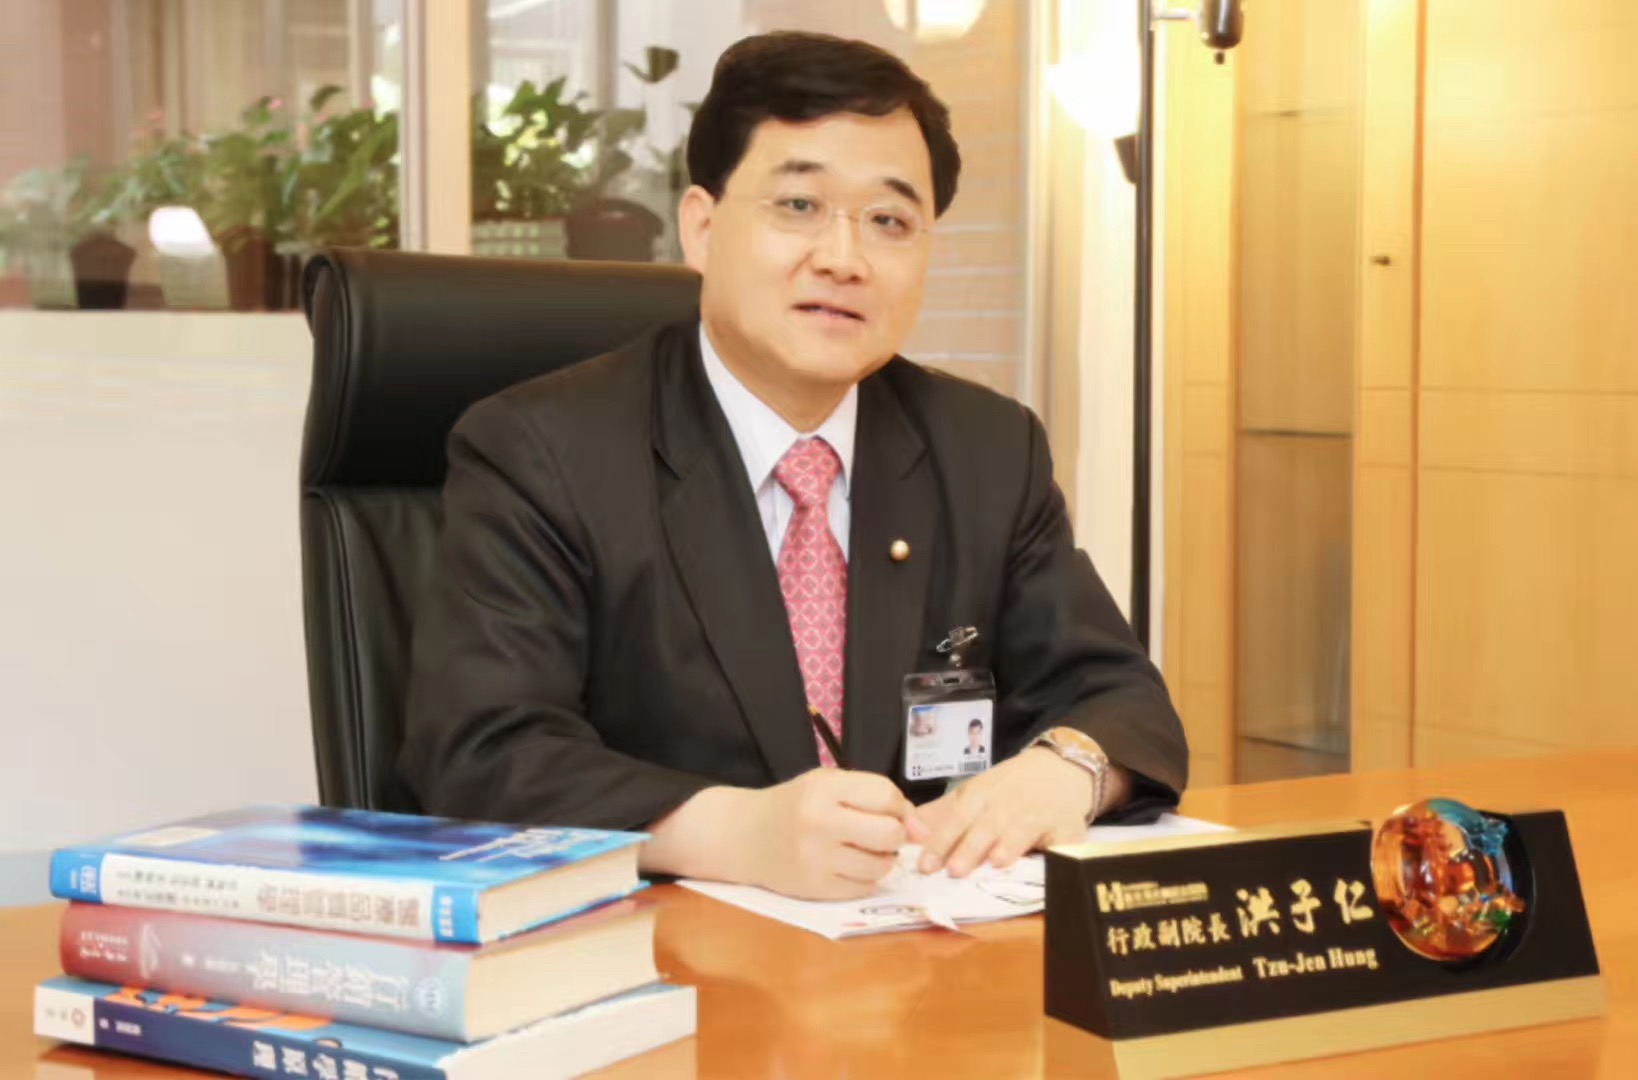 臺灣新光醫院副院長洪子仁受邀擔任大陸地區規模大的健康管理公司培訓講師